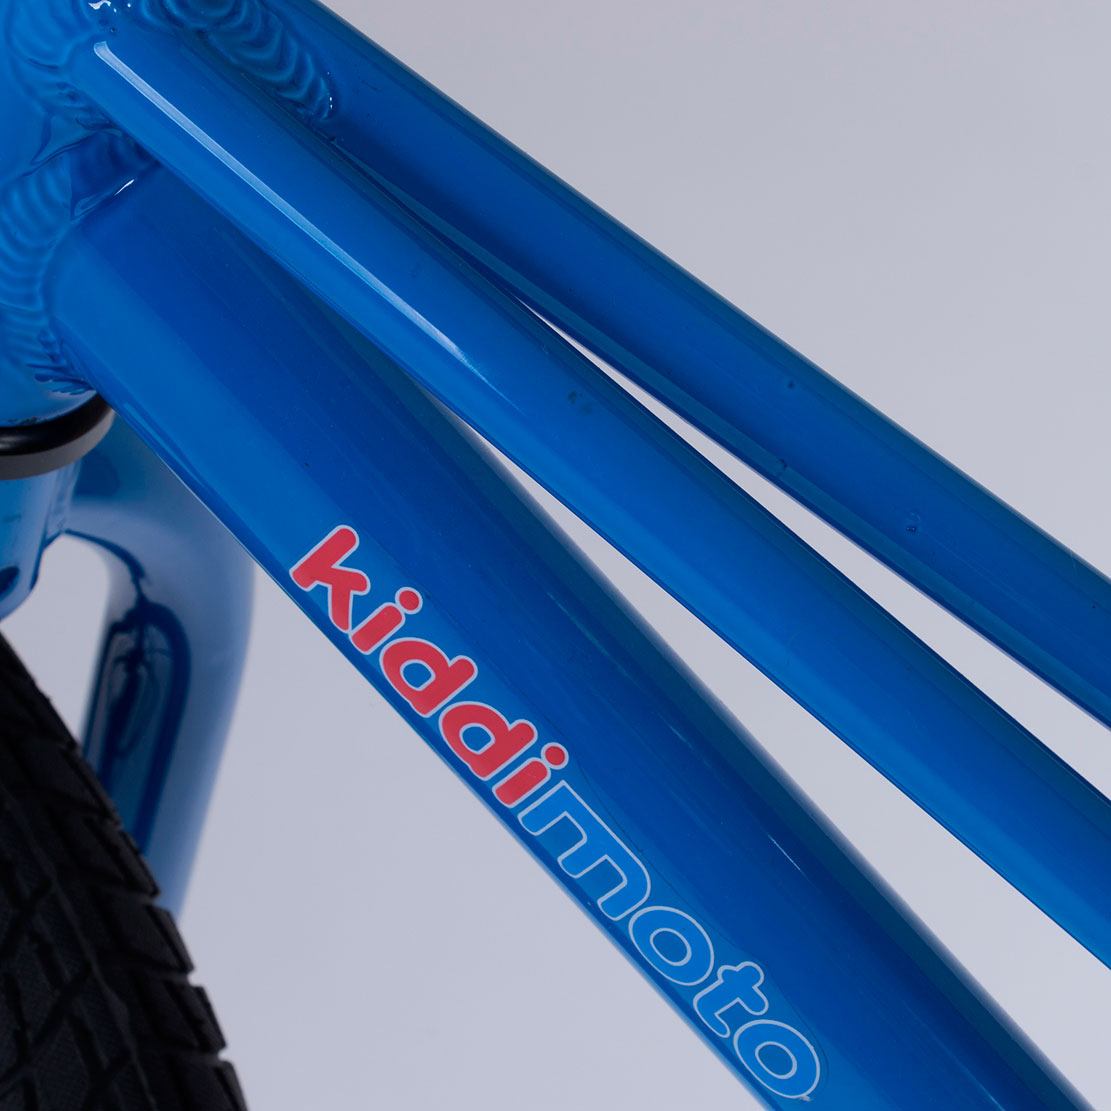 Біговел 12" Kiddimoto BMX1 blue фото 3